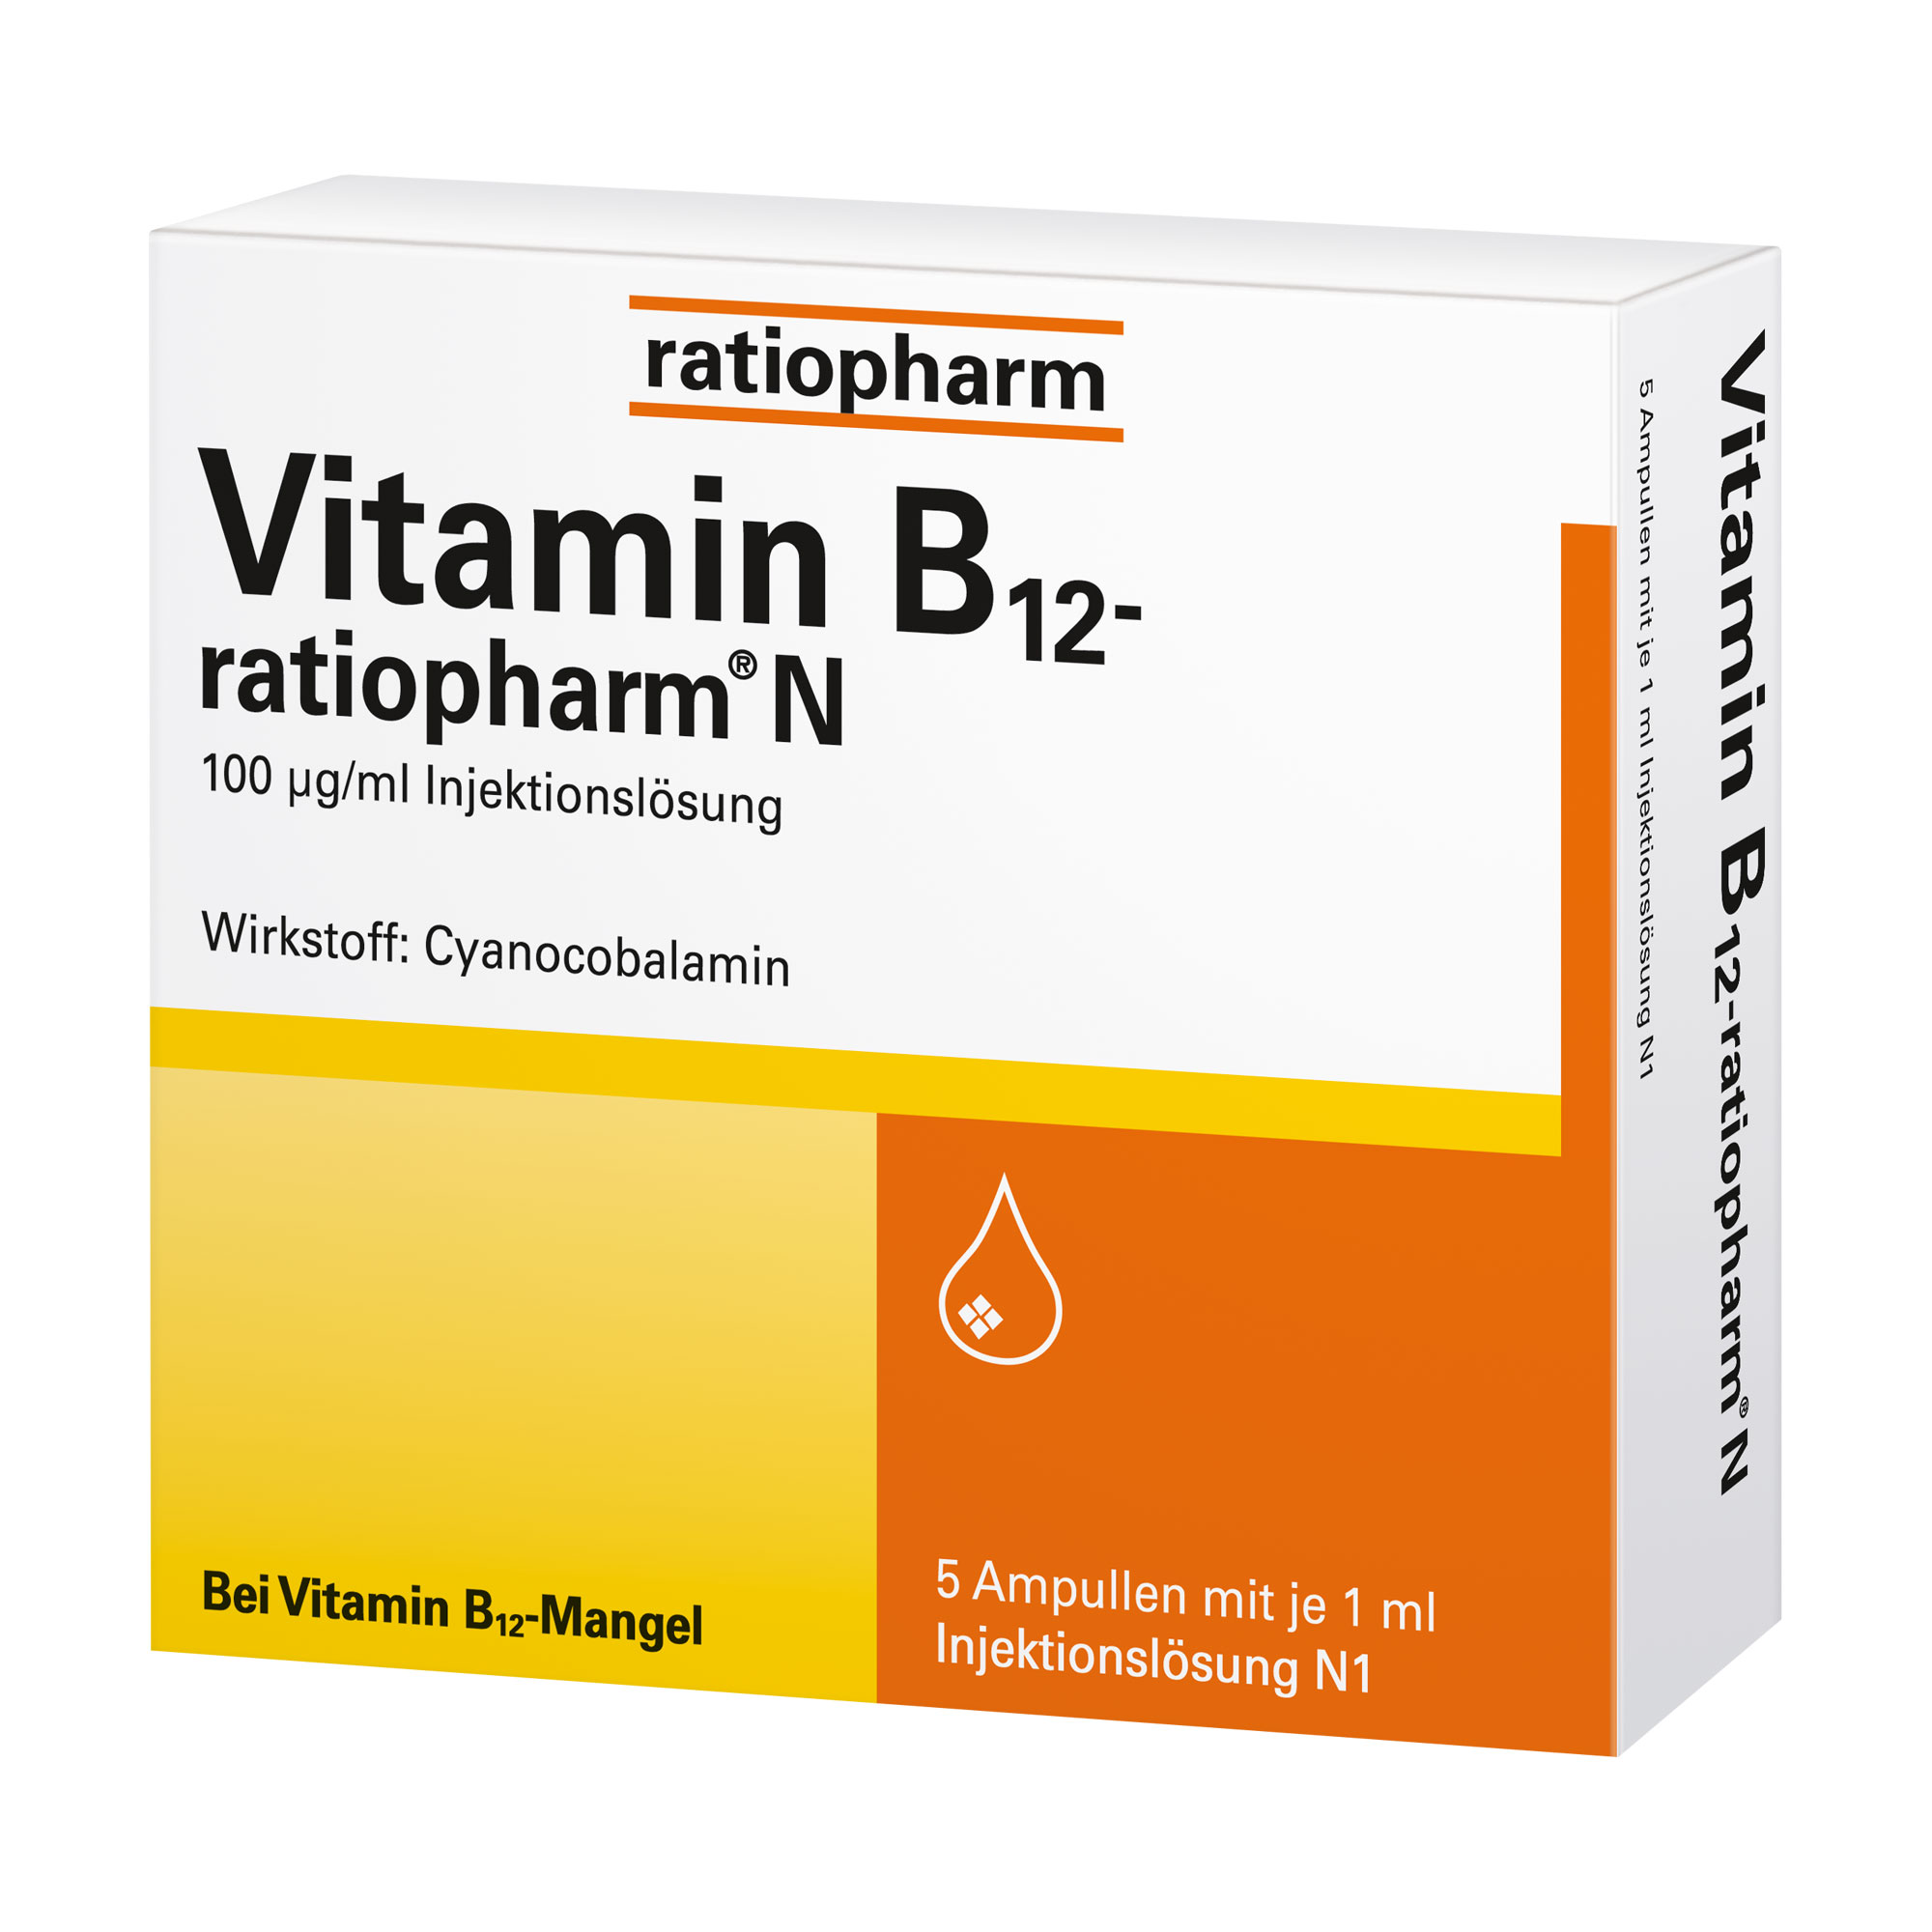 Zur Behandlung eines Vitamin-B12-Mangels, der ernährungsmäßig nicht behoben werden kann.